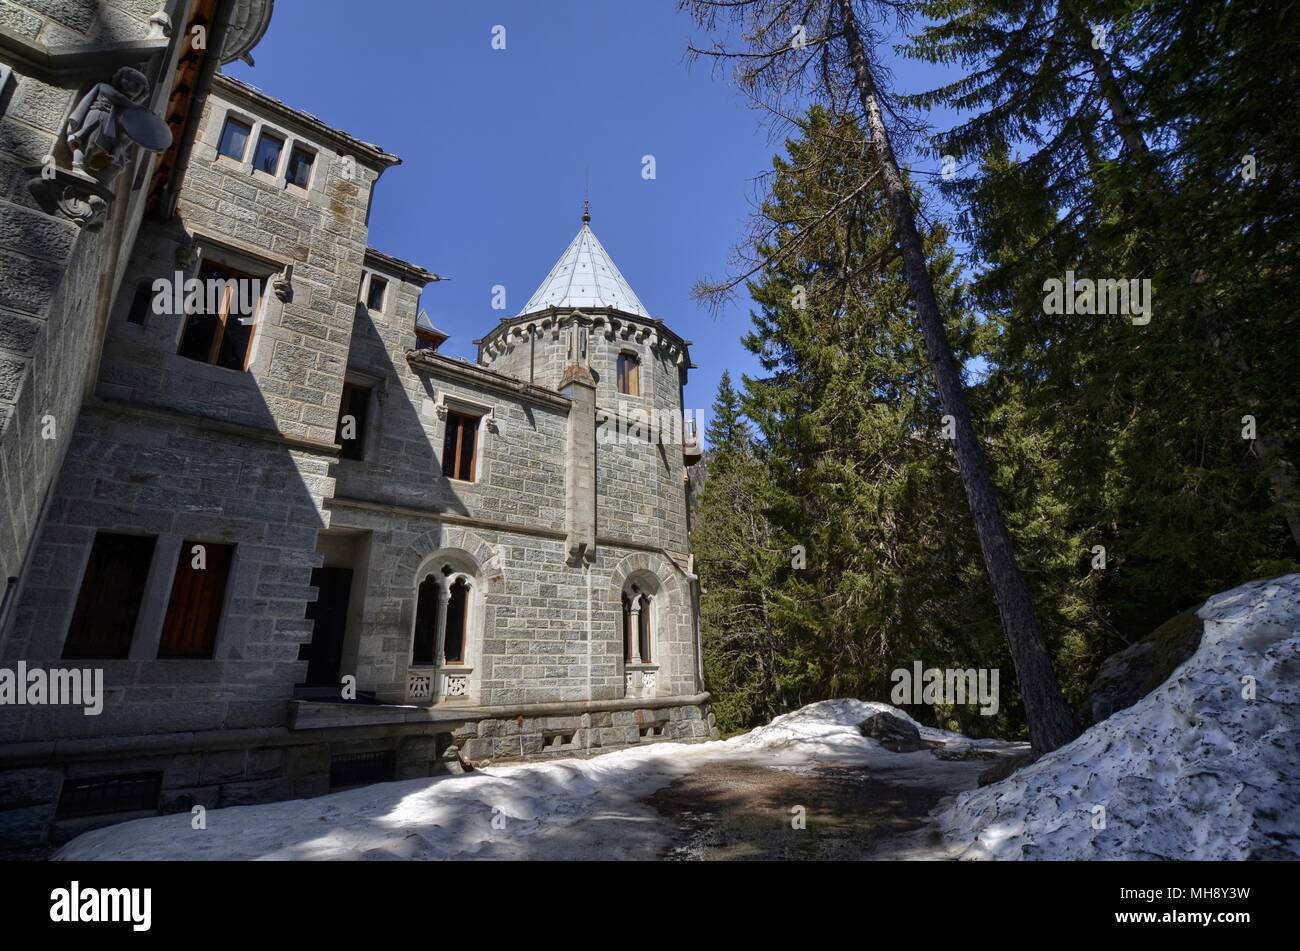 Gressoney-Saint-Jean, région du Val d'aoste, Italie. 25 avril 2018. Castel Savoia, est une villa construite à la fin des années 1800 dans un style éclectique. Jeu de conte Banque D'Images